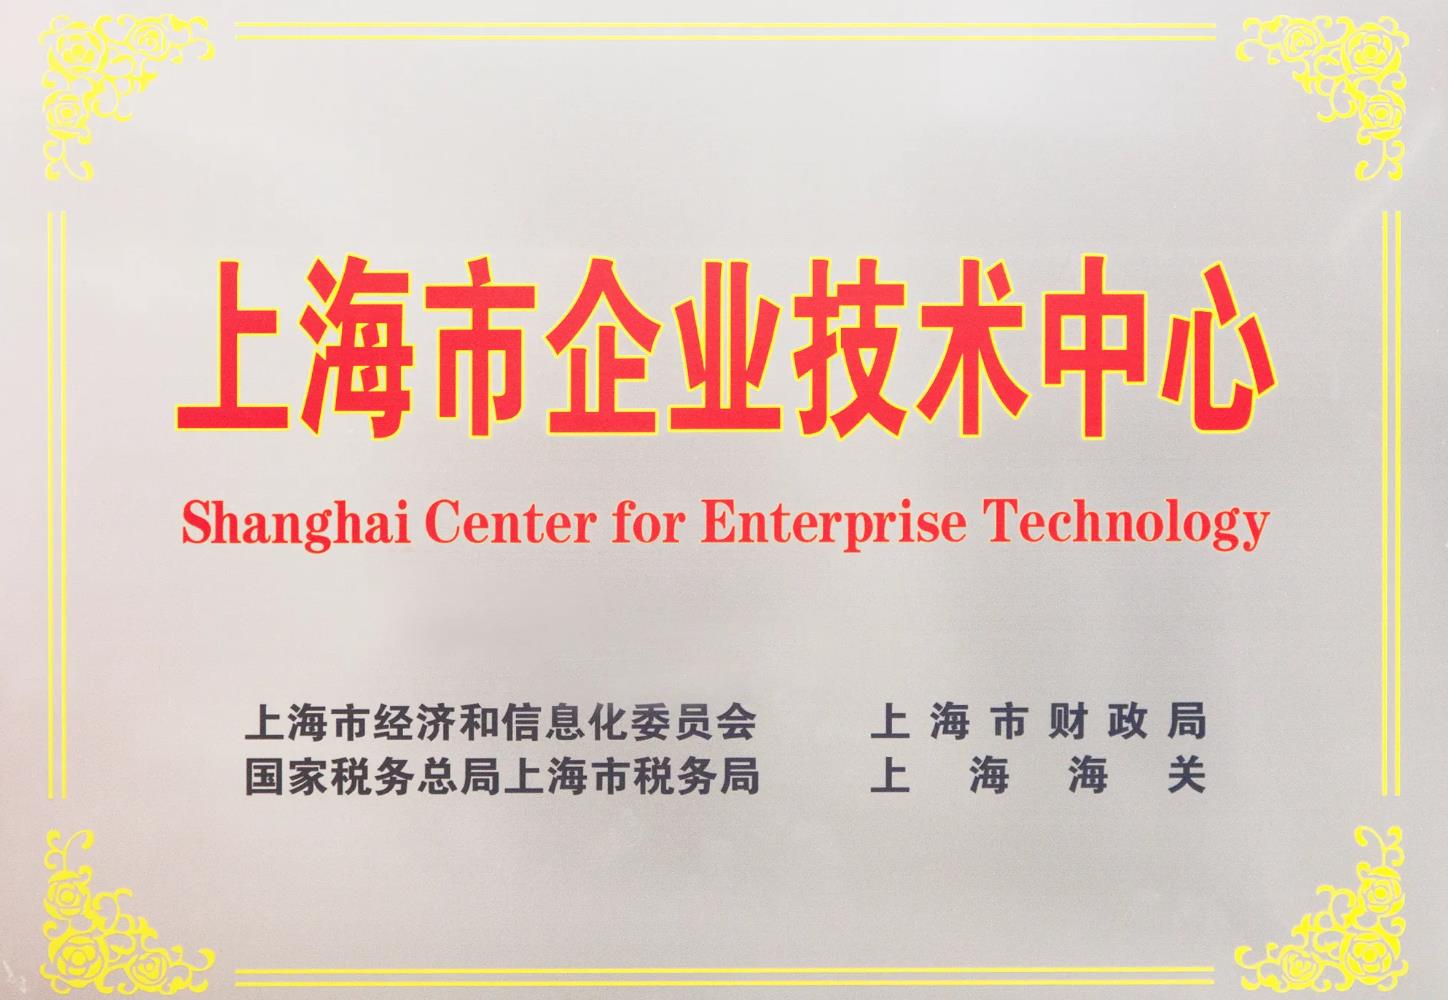 喜讯! 新普京888.3app研发中心被成功认定为 上海市企业技术中心